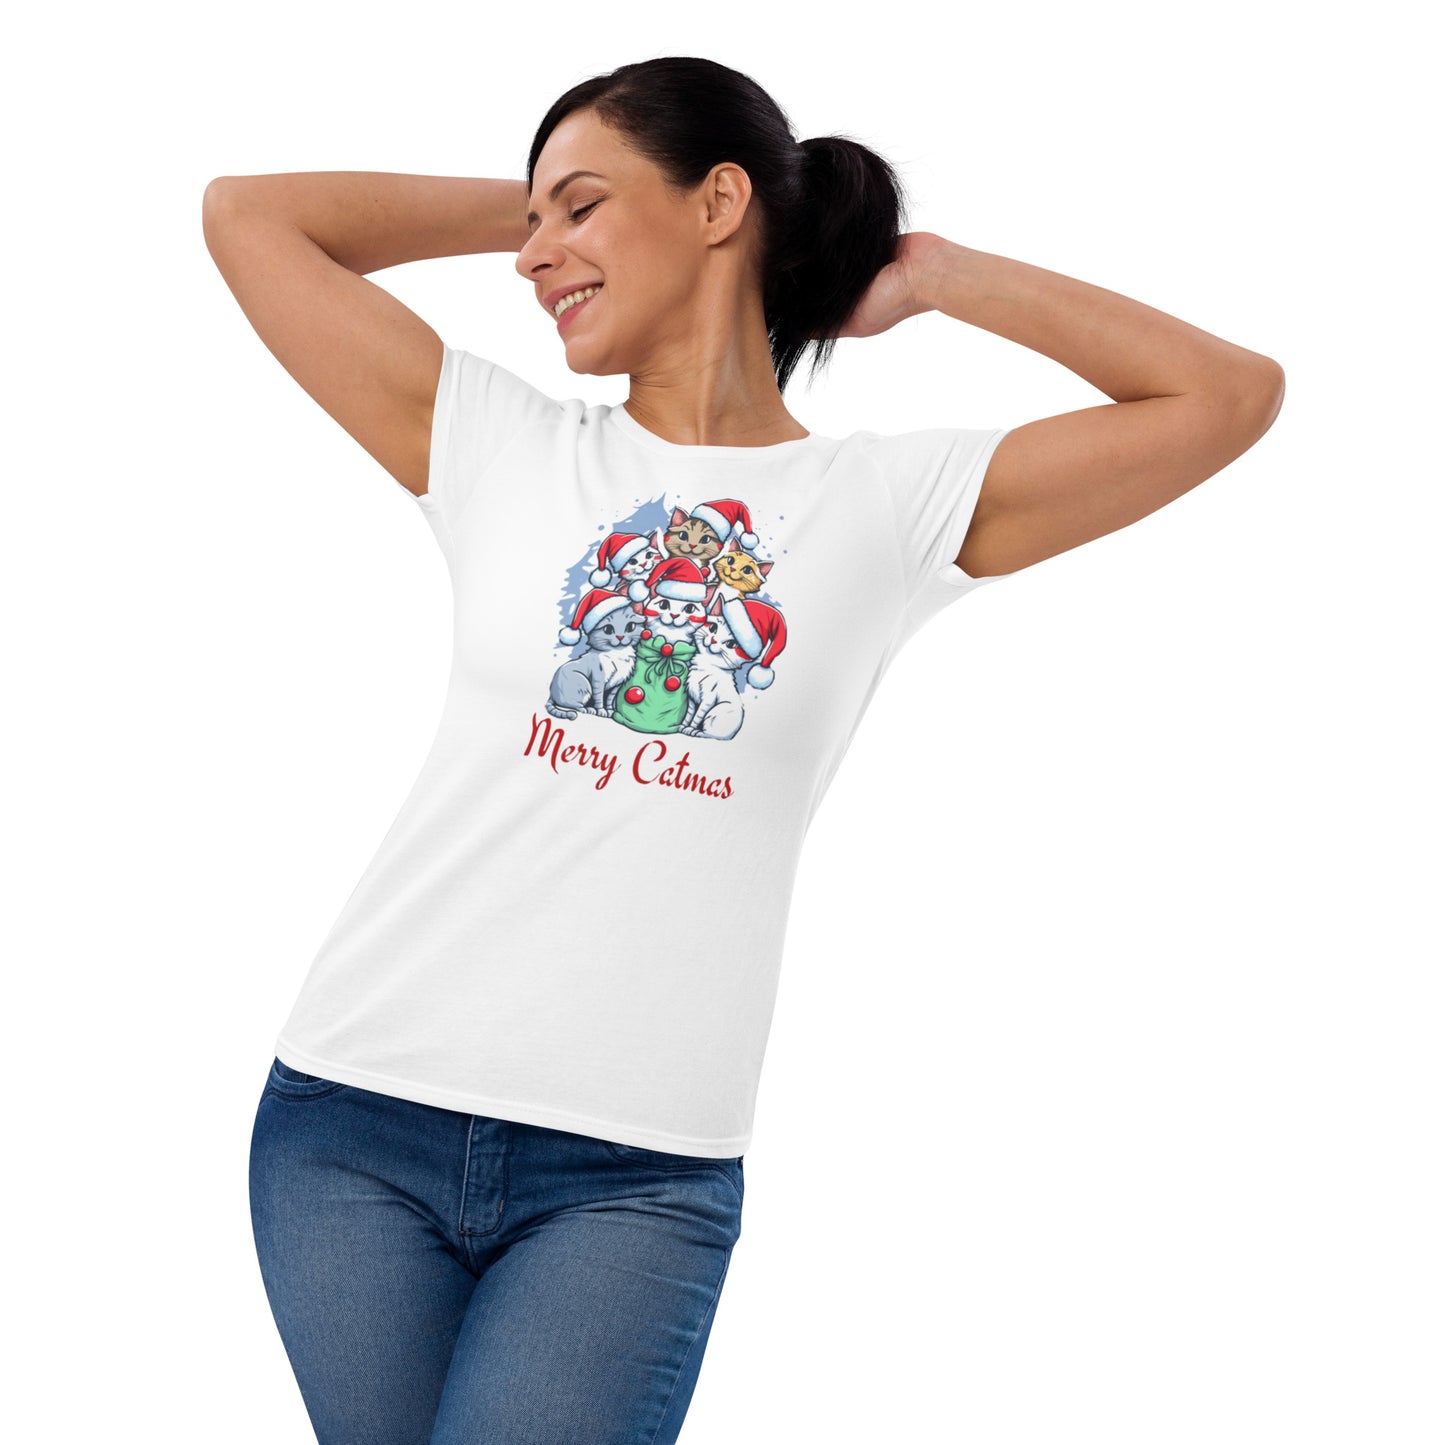 Cat-mas Women's short sleeve t-shirt